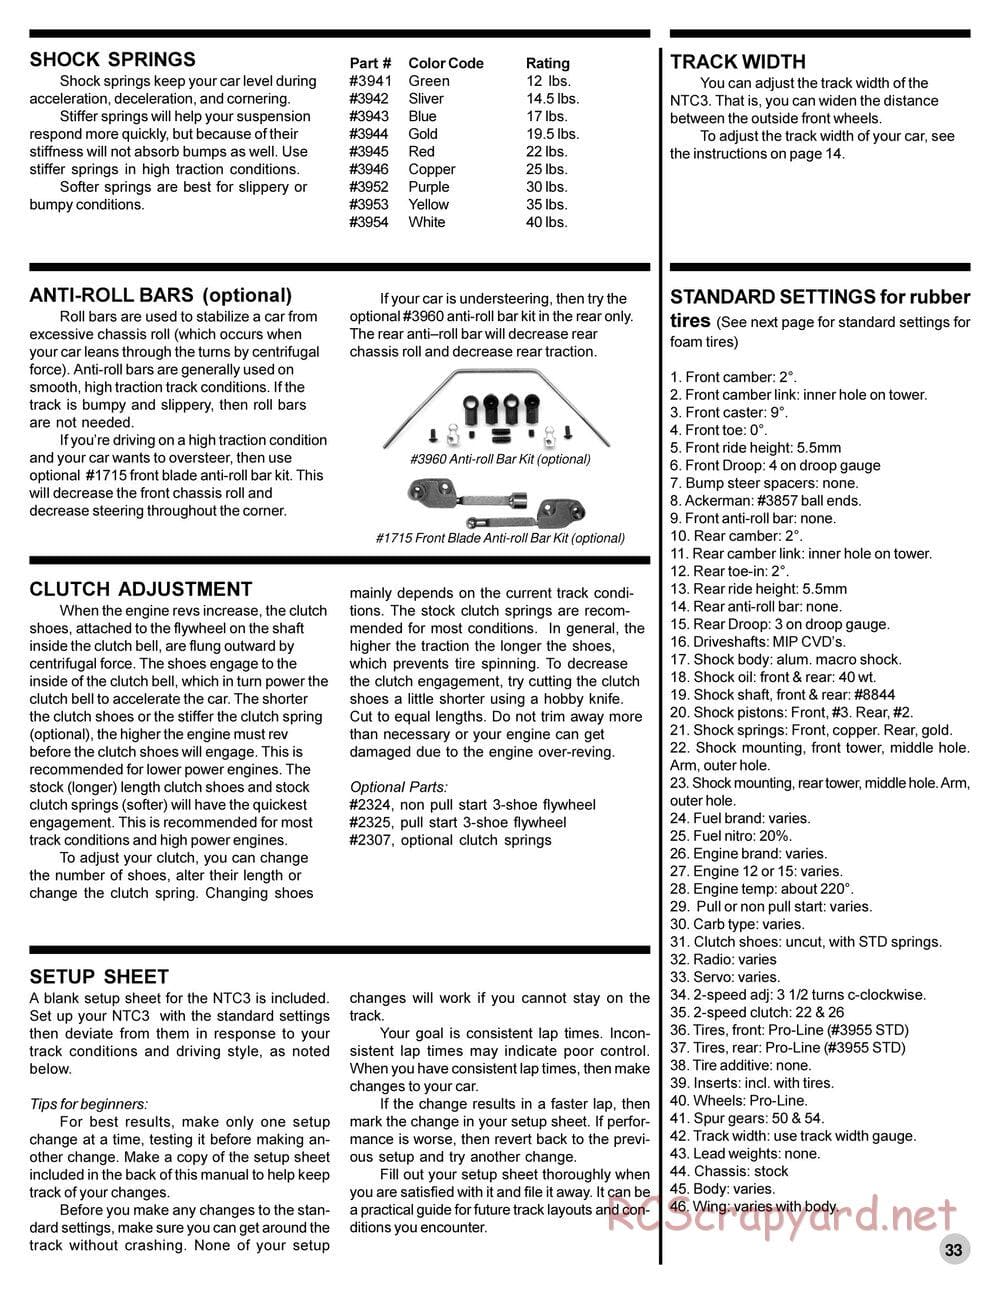 Team Associated - NTC3 Team - Manual - Page 32